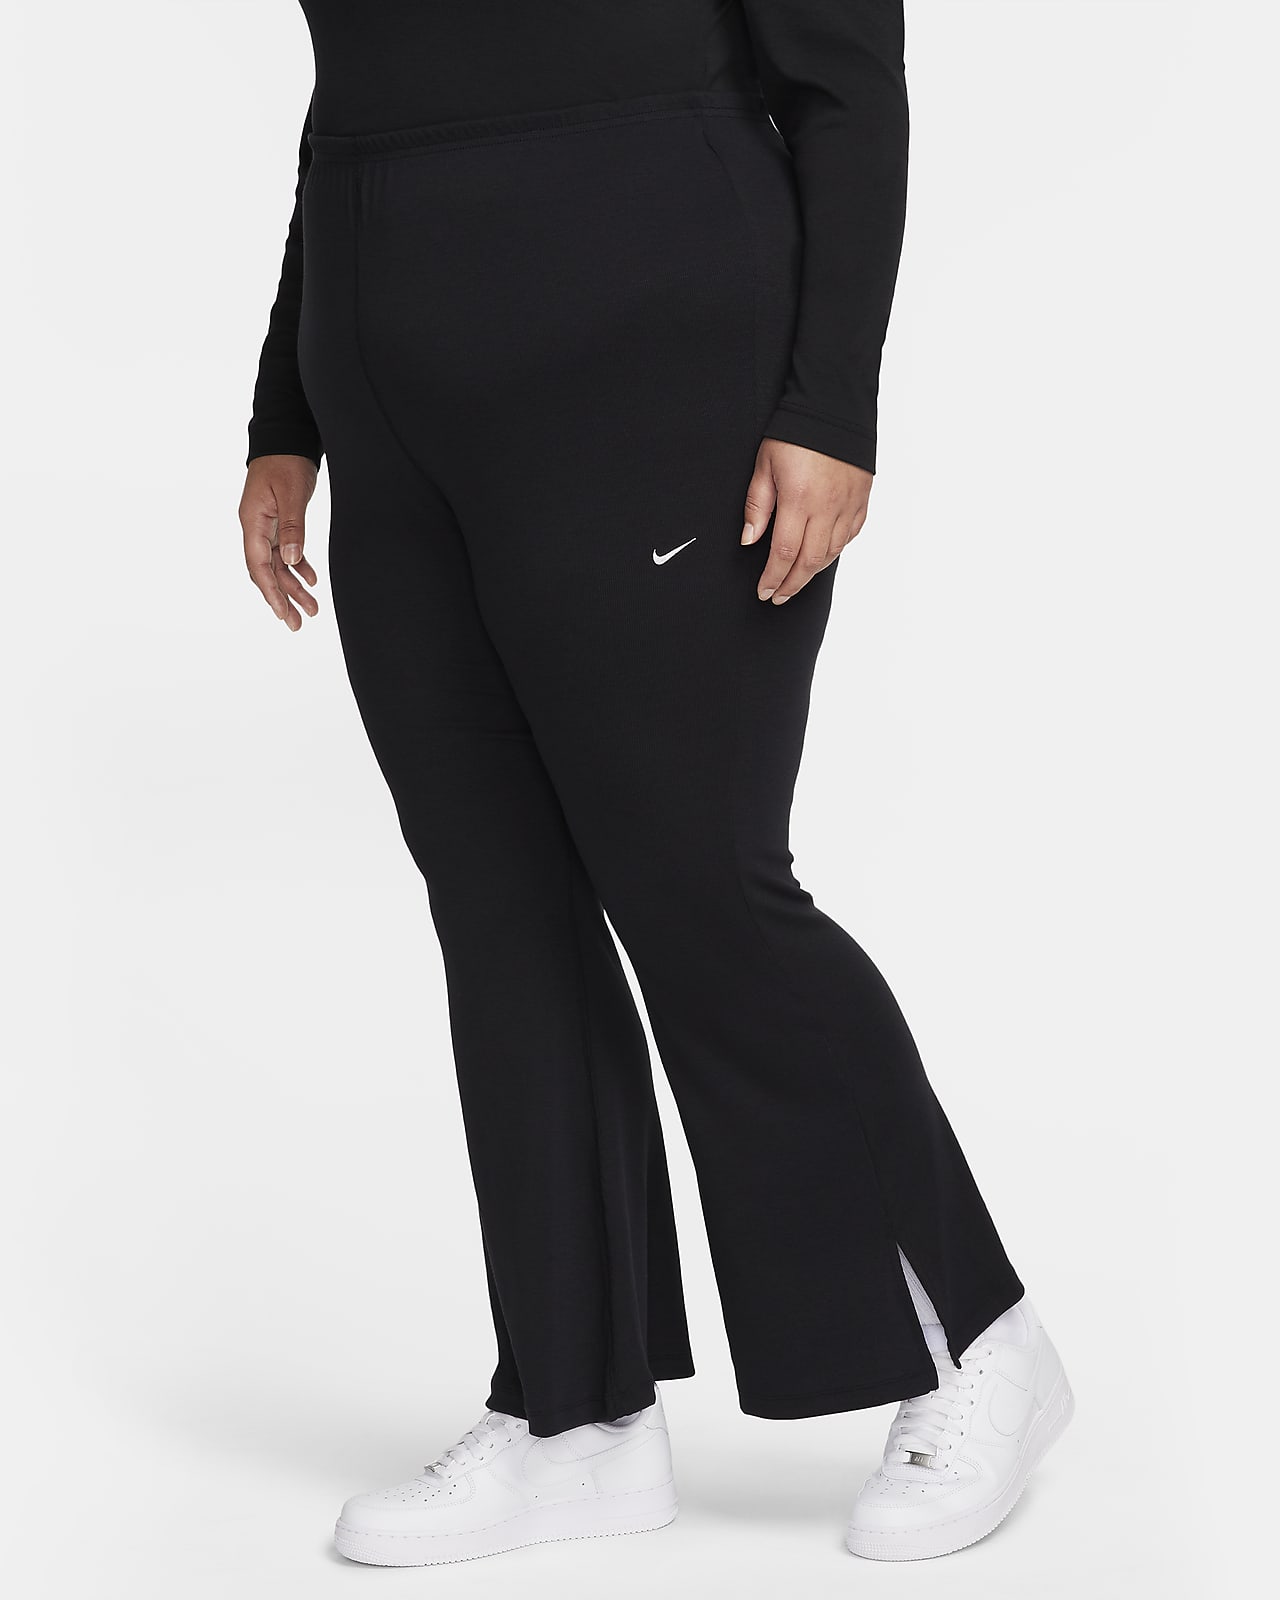 Legging évasé ajusté et côtelé Nike Sportswear Chill Knit pour femme (grande taille)